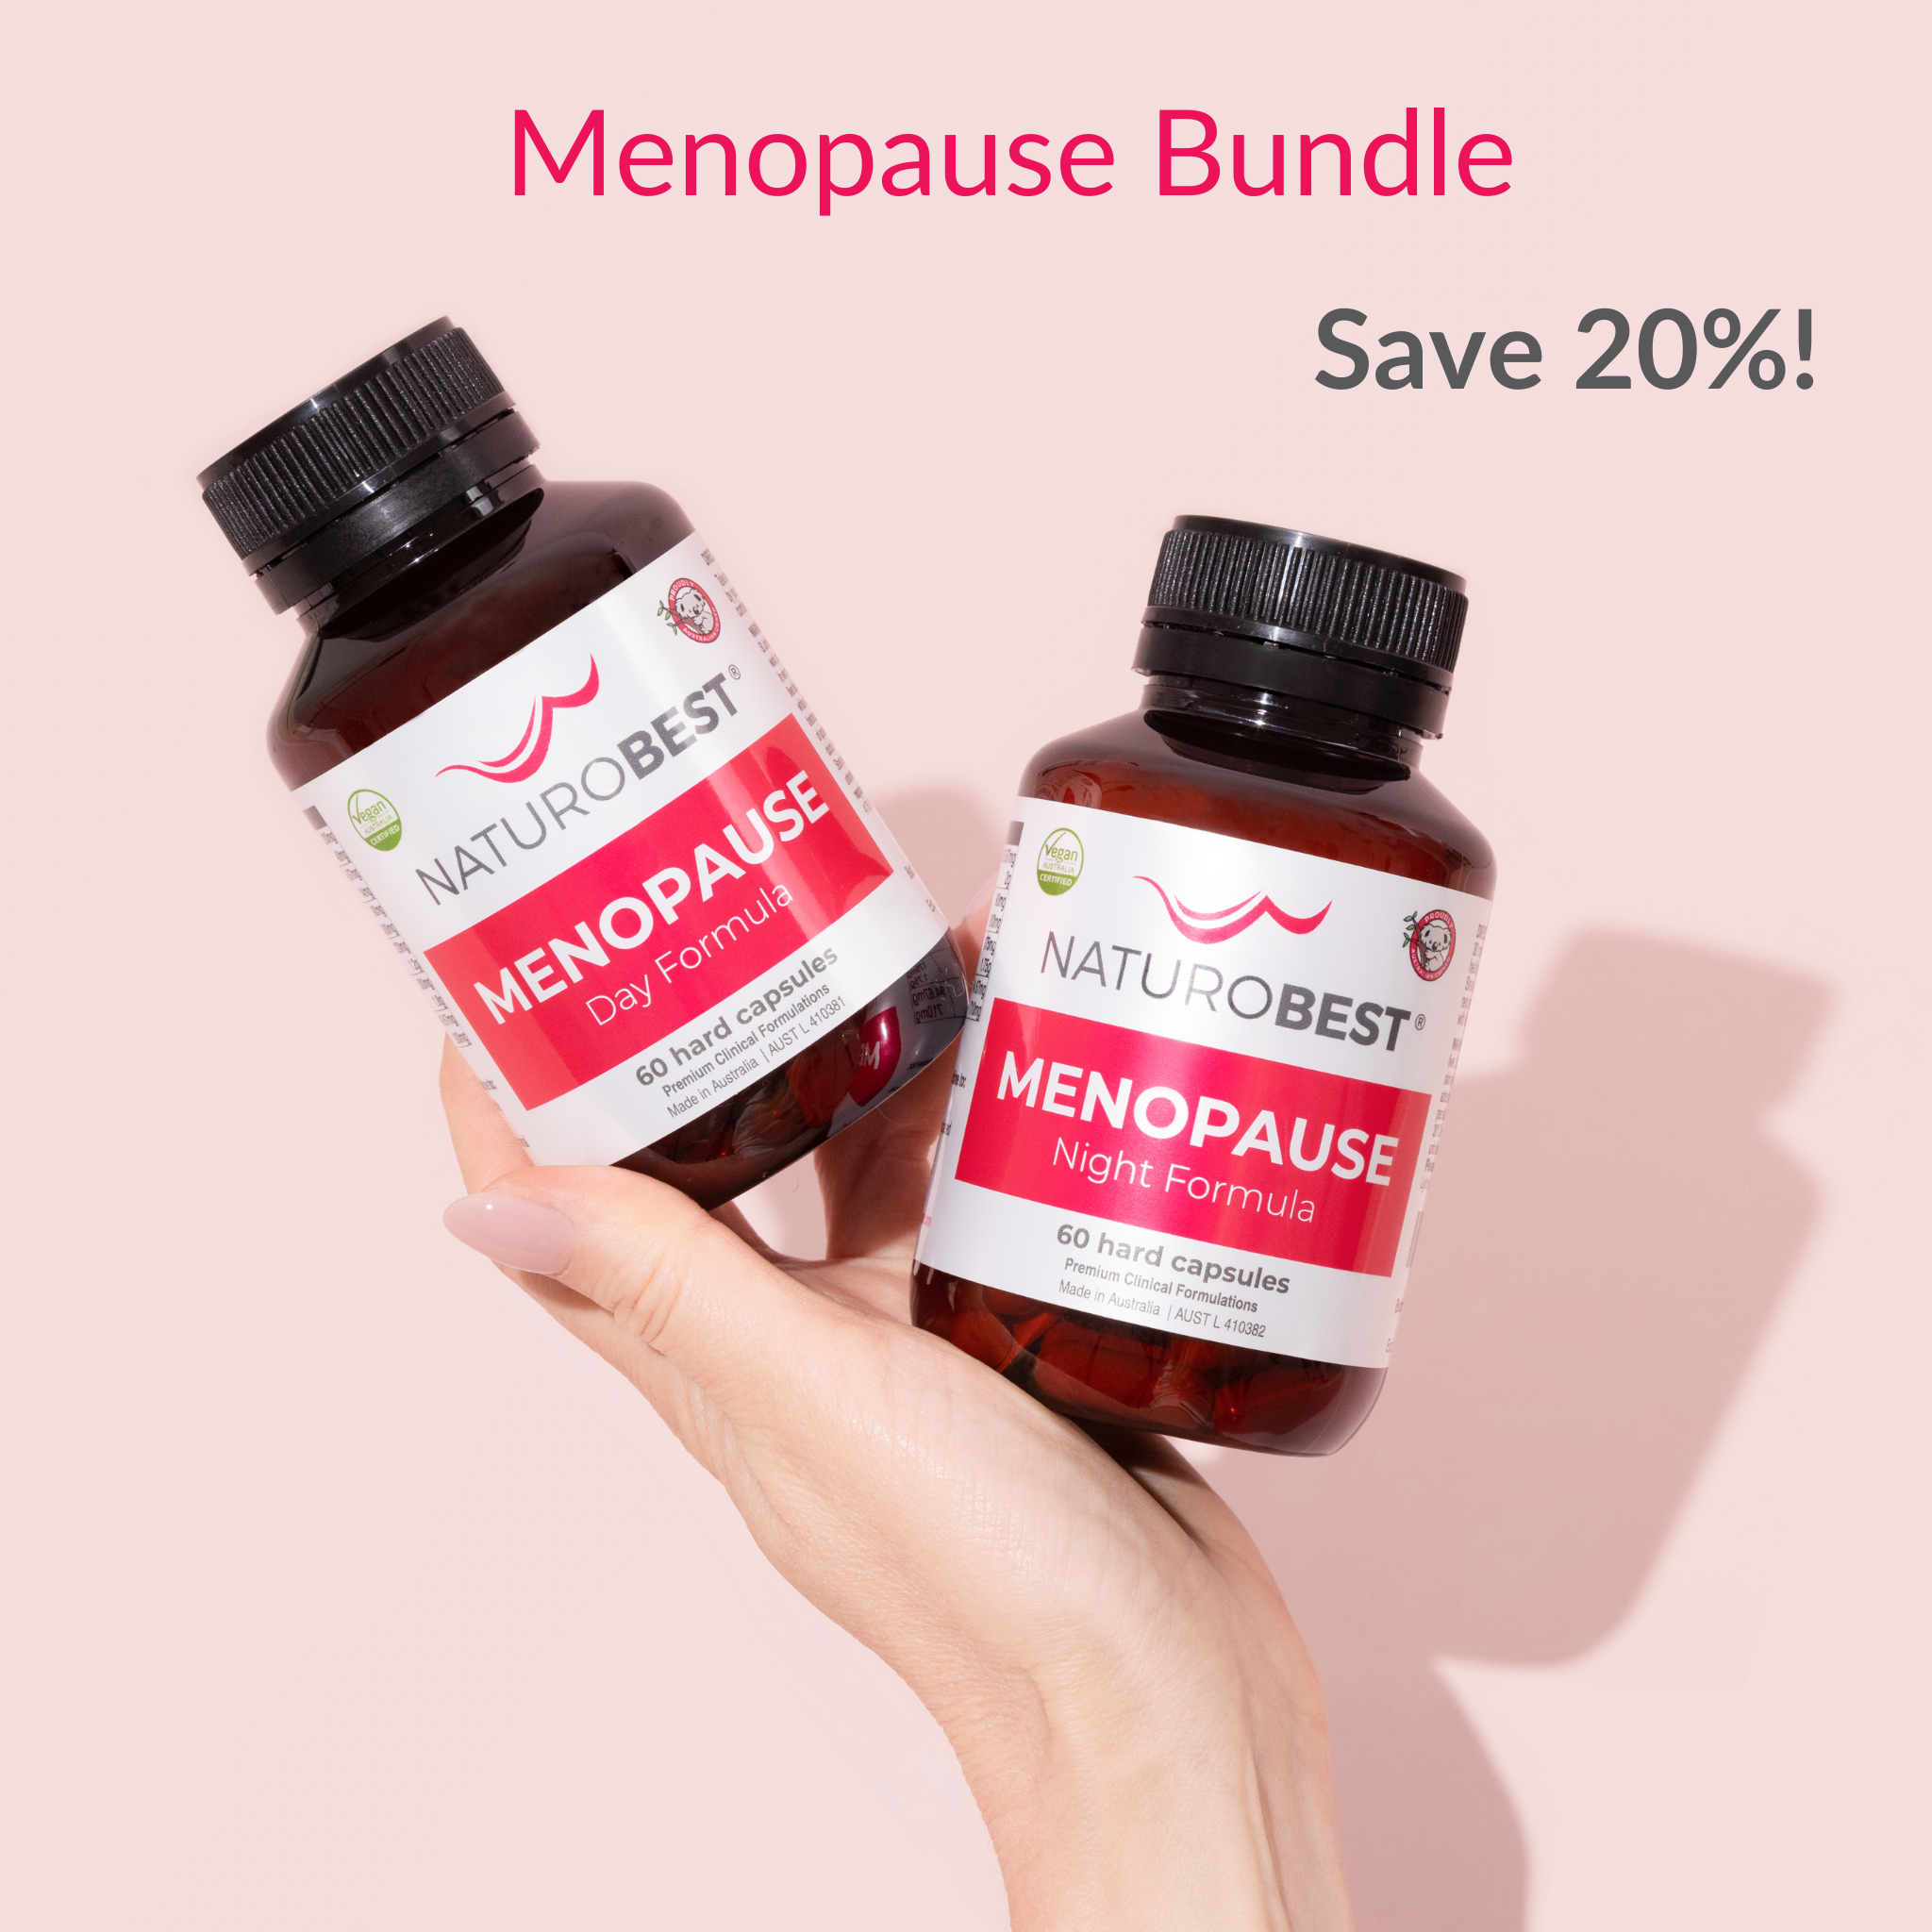 Menopause Bundle